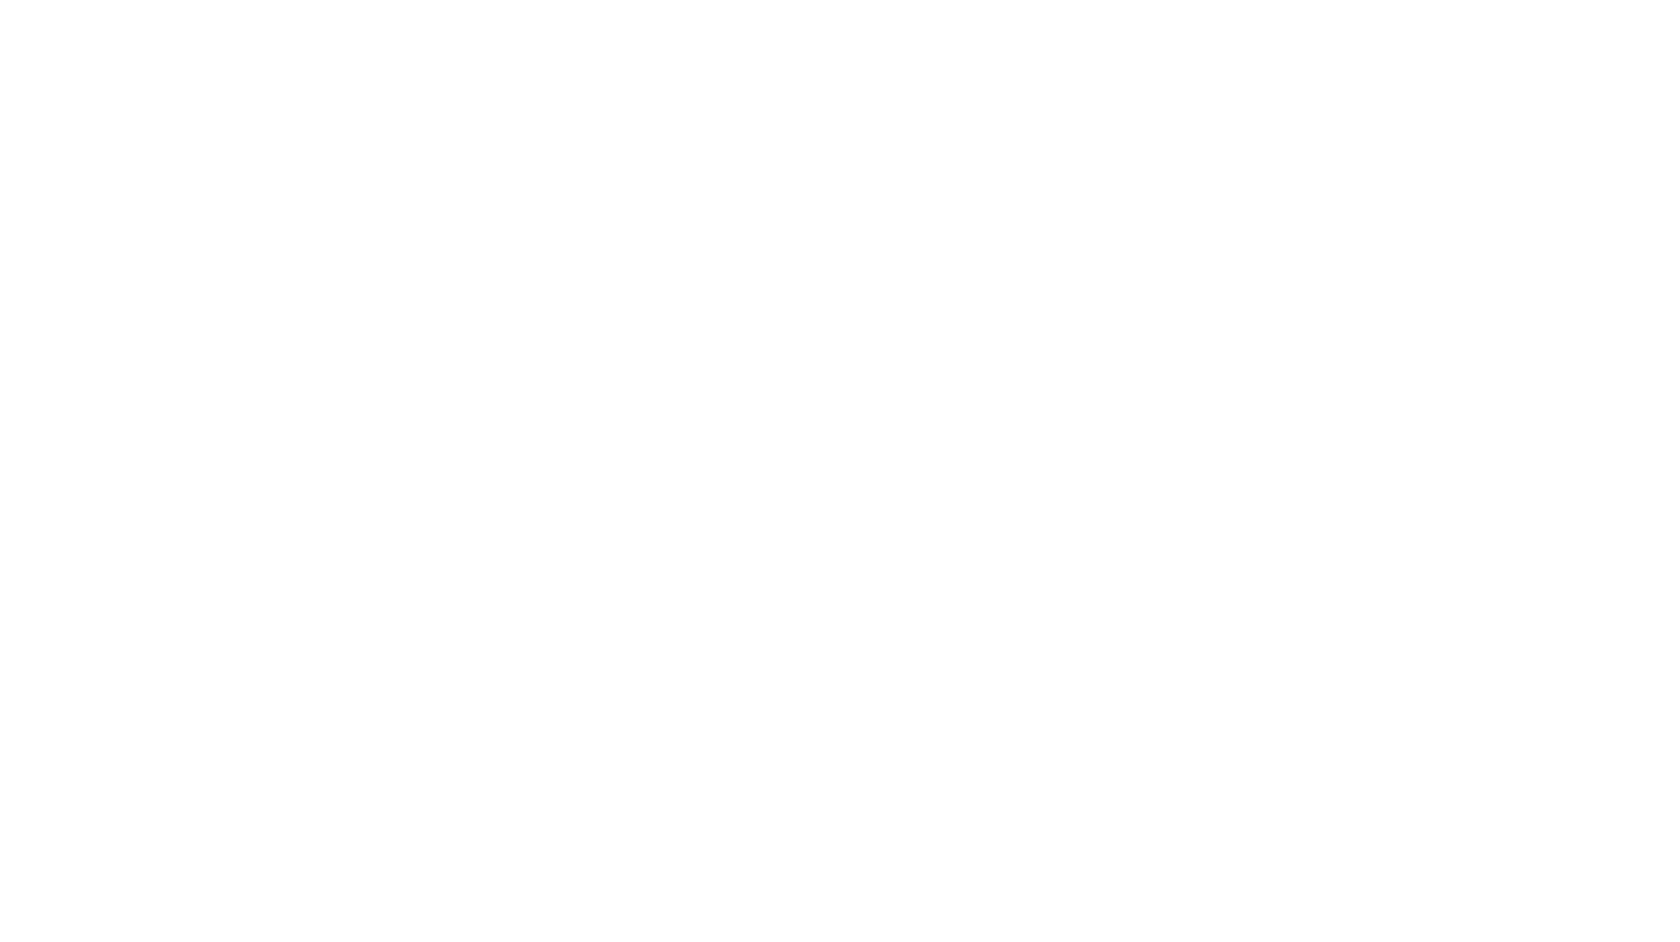 Вверху комбинированный с логотипом фирменный знак Ассоциации Производителей Ароматизаторов. Для создания знака использовались инструменты Поворот и Создание фигур.